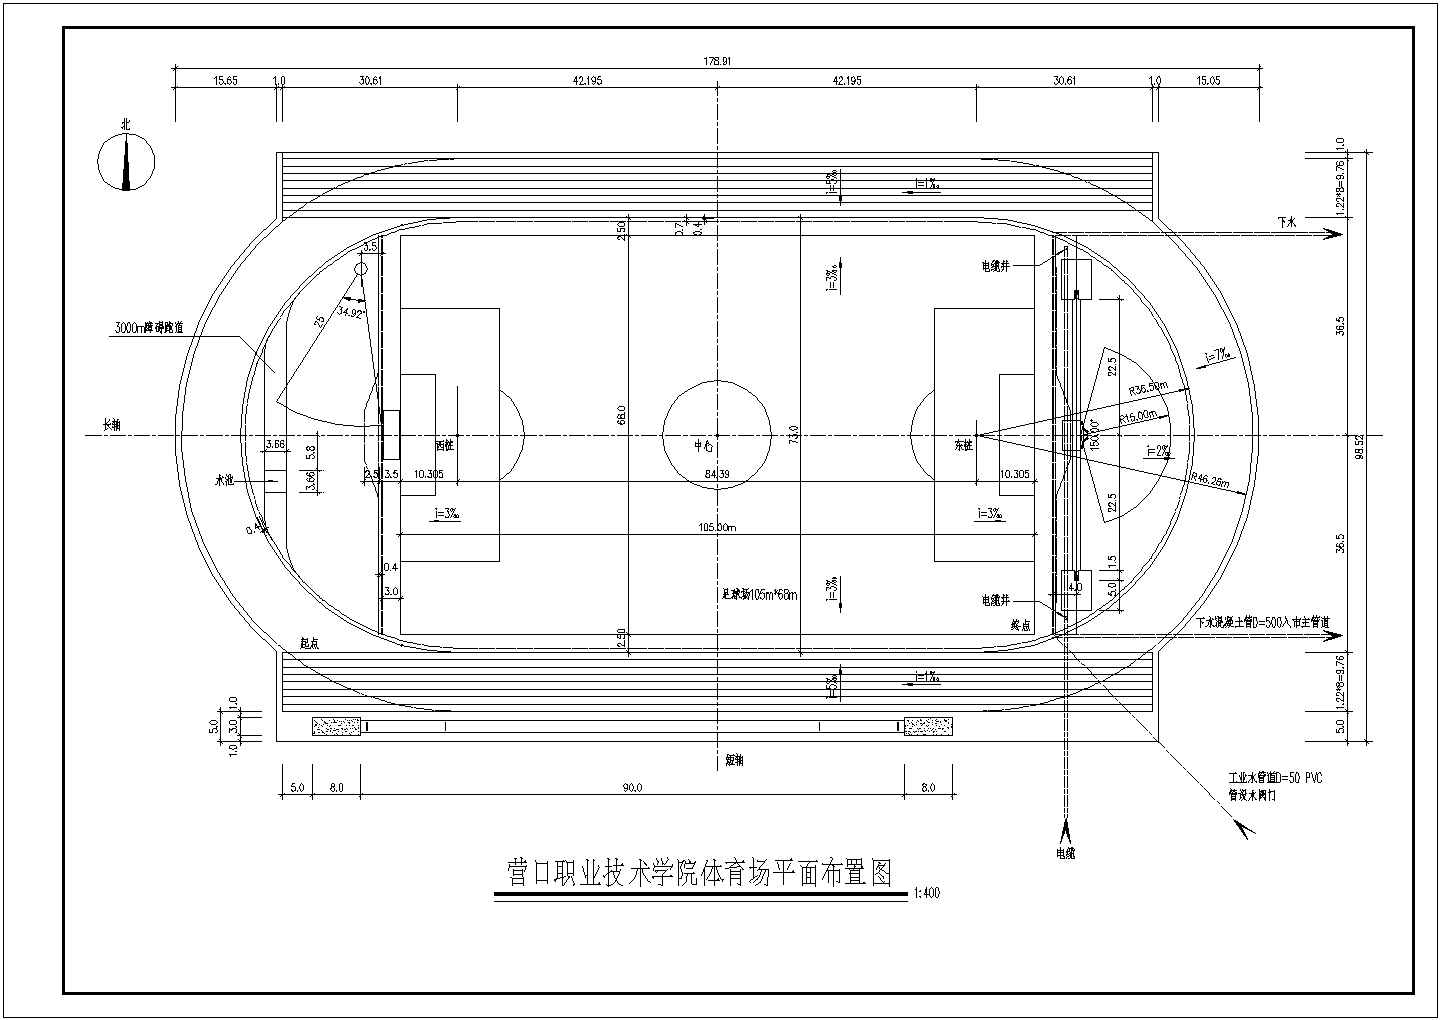 【江苏】某职业技术学院田径场设计施工图